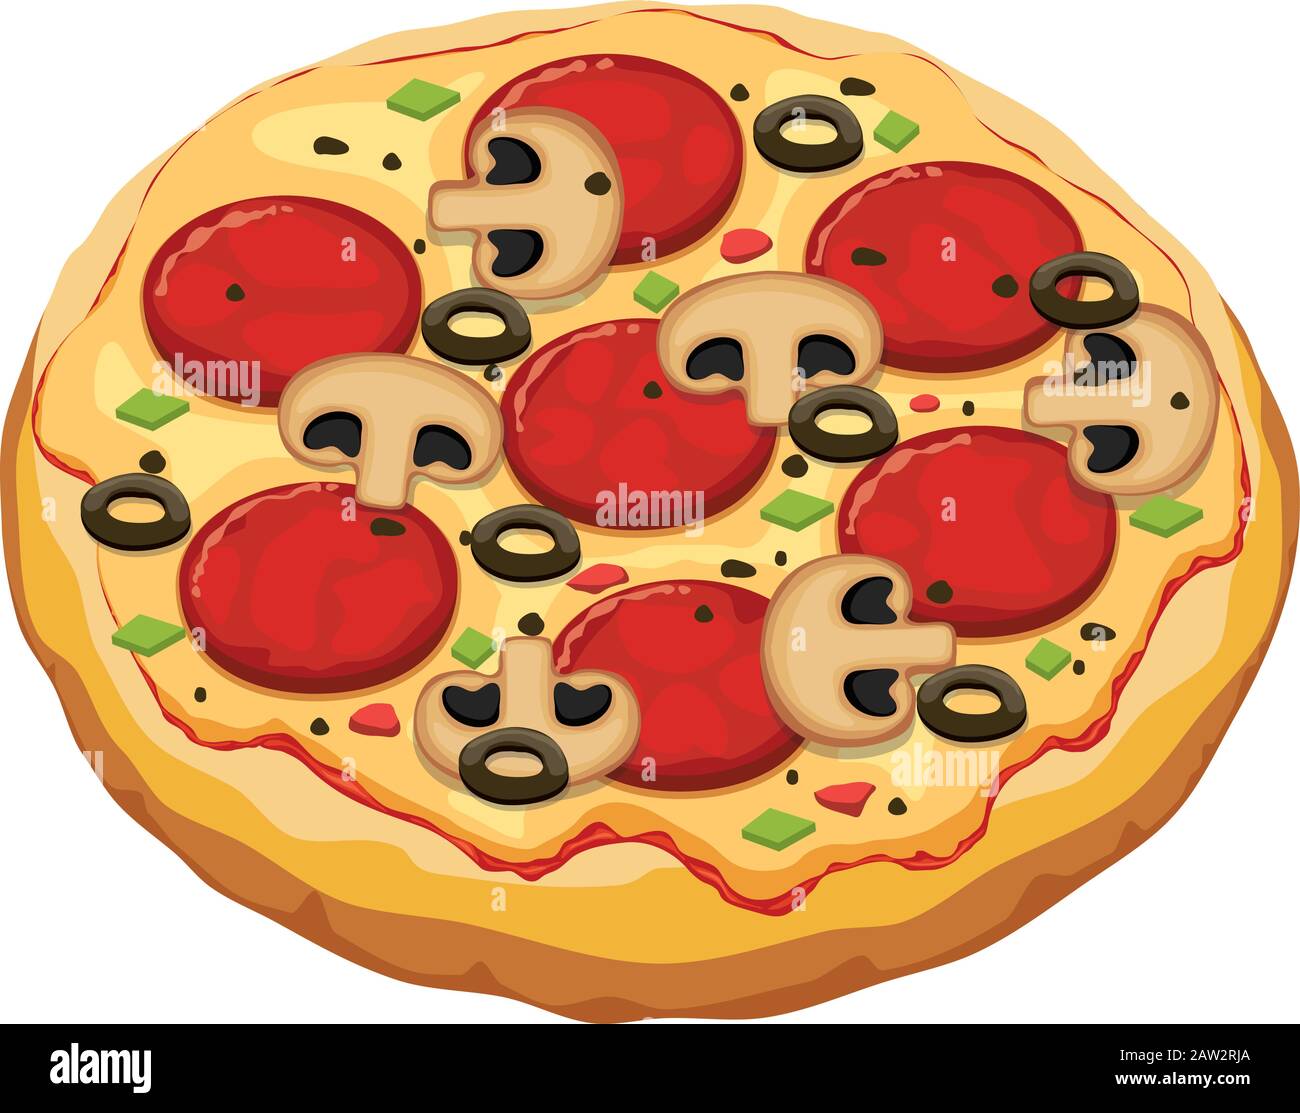 rappresentazione vettoriale della pizza italiana con ketchup, salumi, formaggio, funghi, olive e pepe. pizza isolata su fondo bianco. Illustrazione Vettoriale